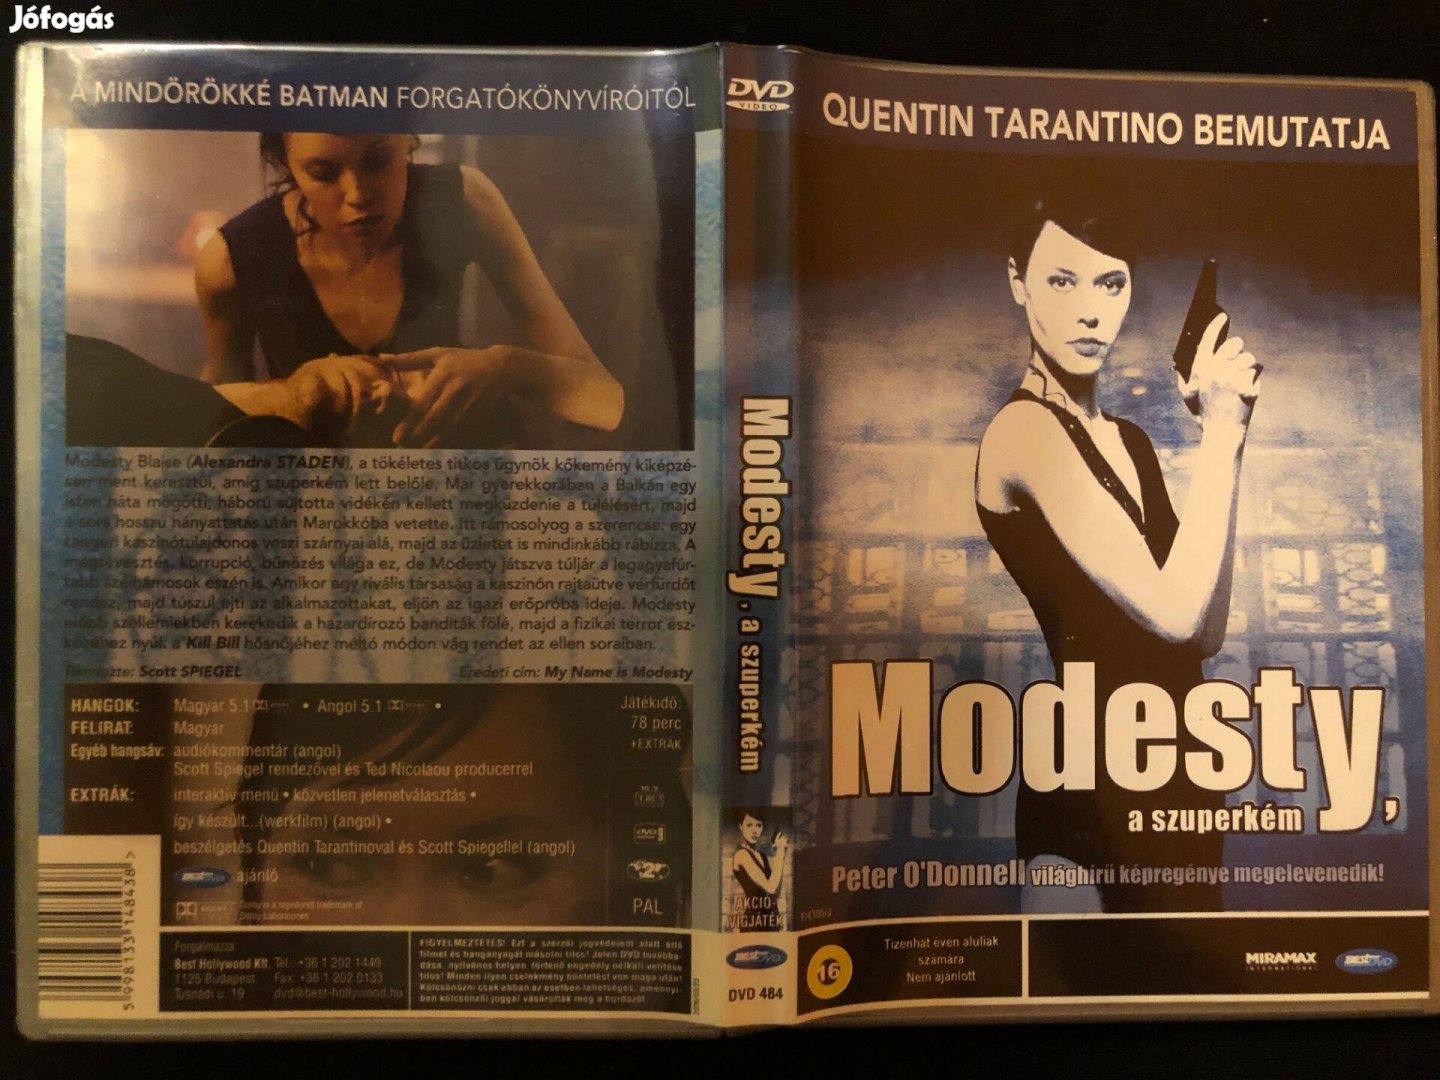 Modesty, a szuperkém DVD (karcmentes, Quentin Tarantino)